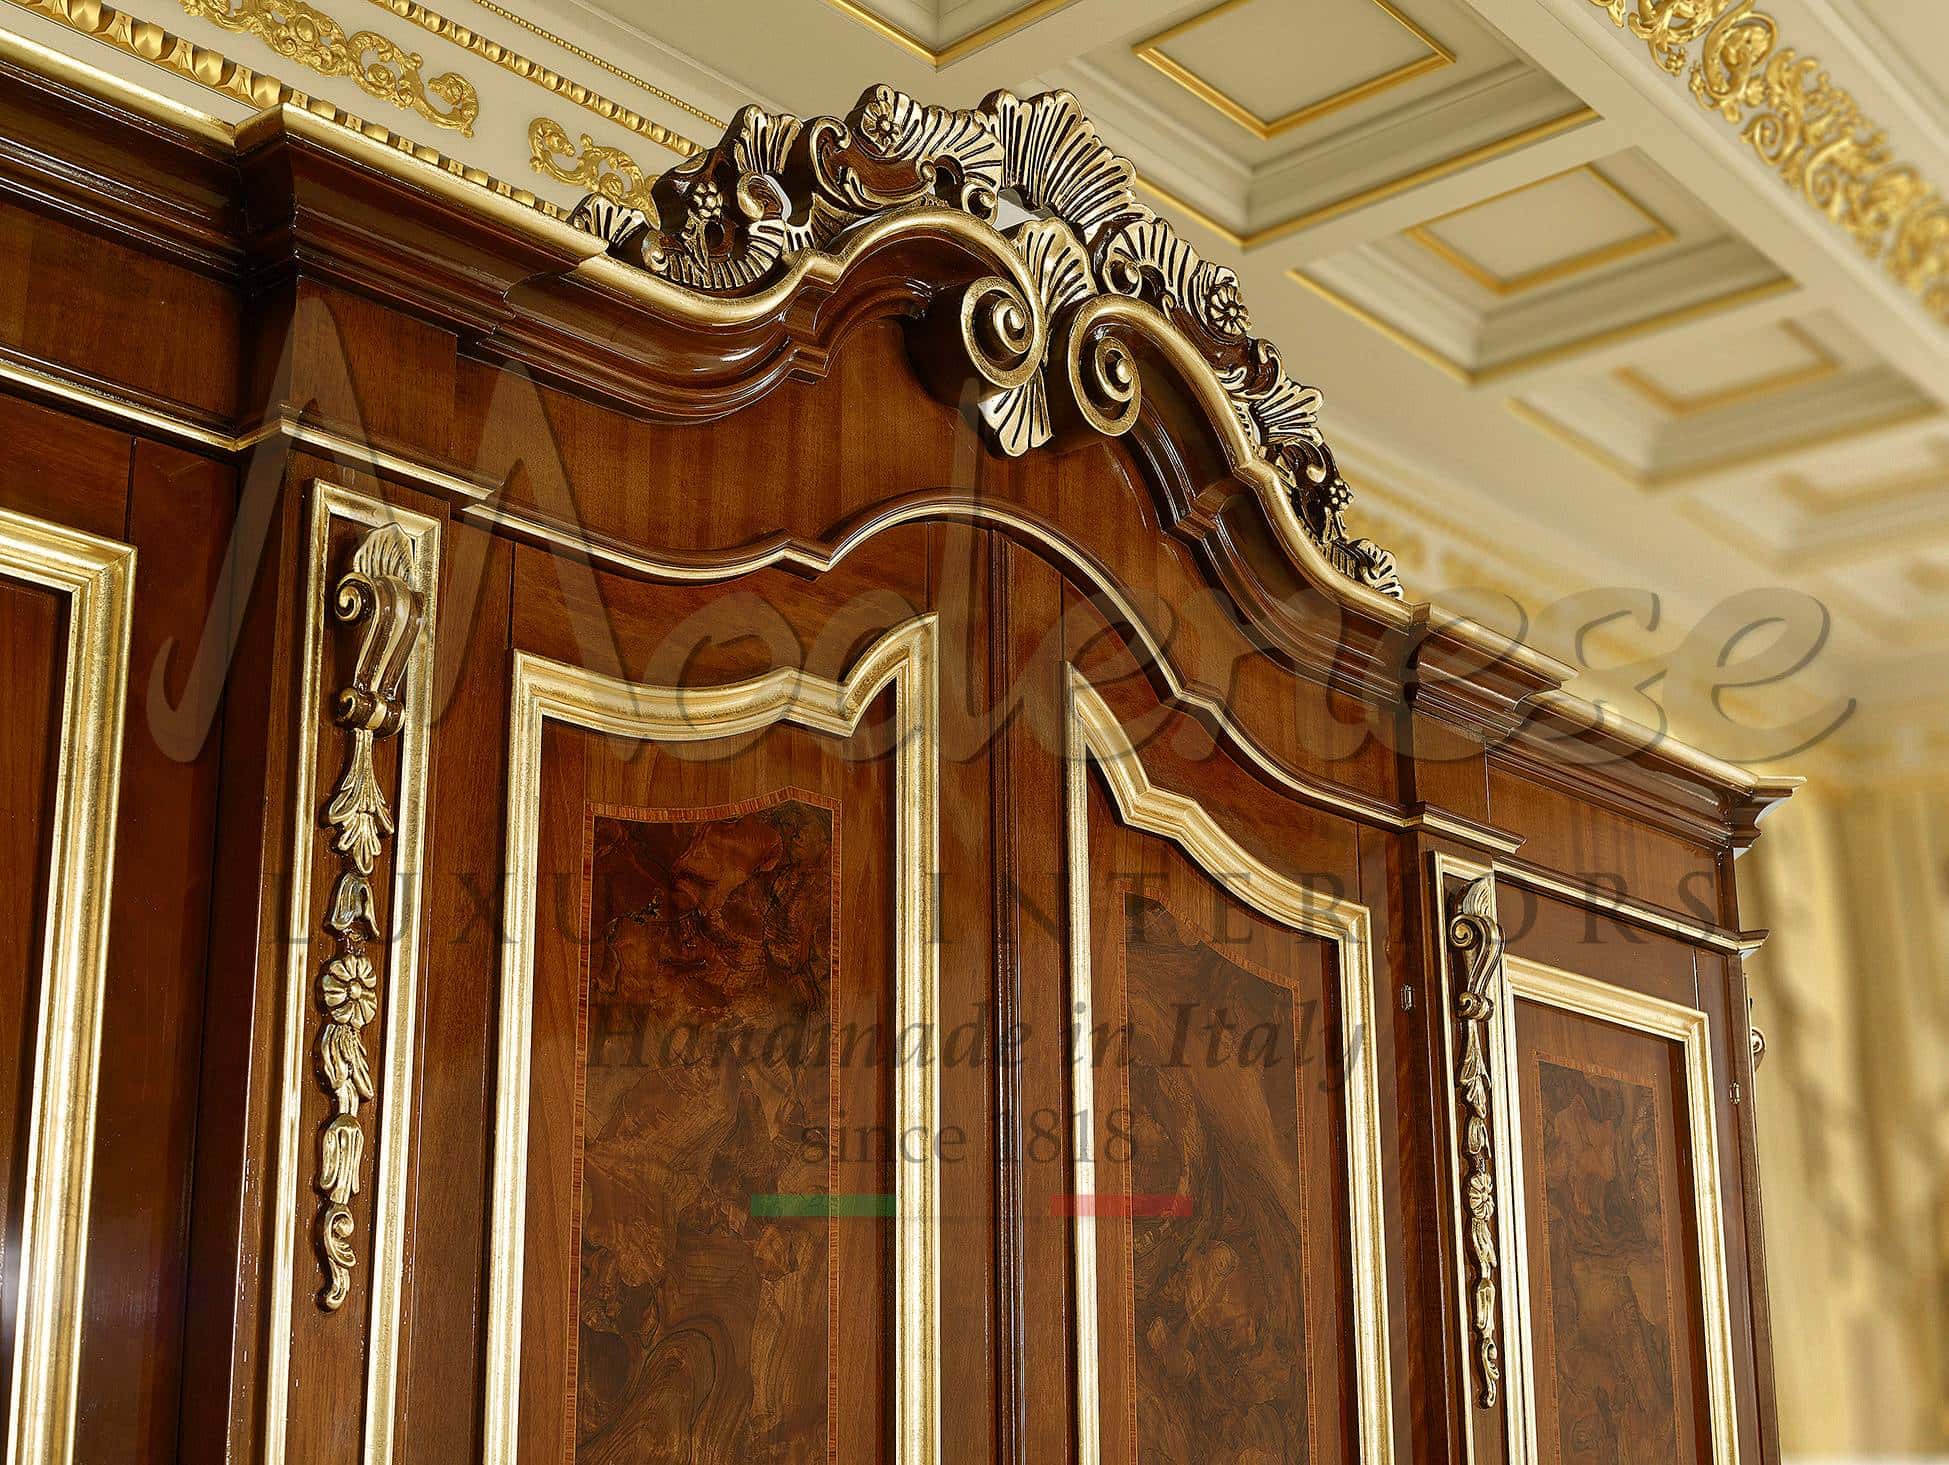 أبواب خشبية كلاسيكية مخصصة بتفاصيل فاخرة من الأوراق الذهبية منحوتة خشب بحرفية يدوي تصميمات إيطالية عالية الجودة بتصميمات داخلية باهظة الثمن